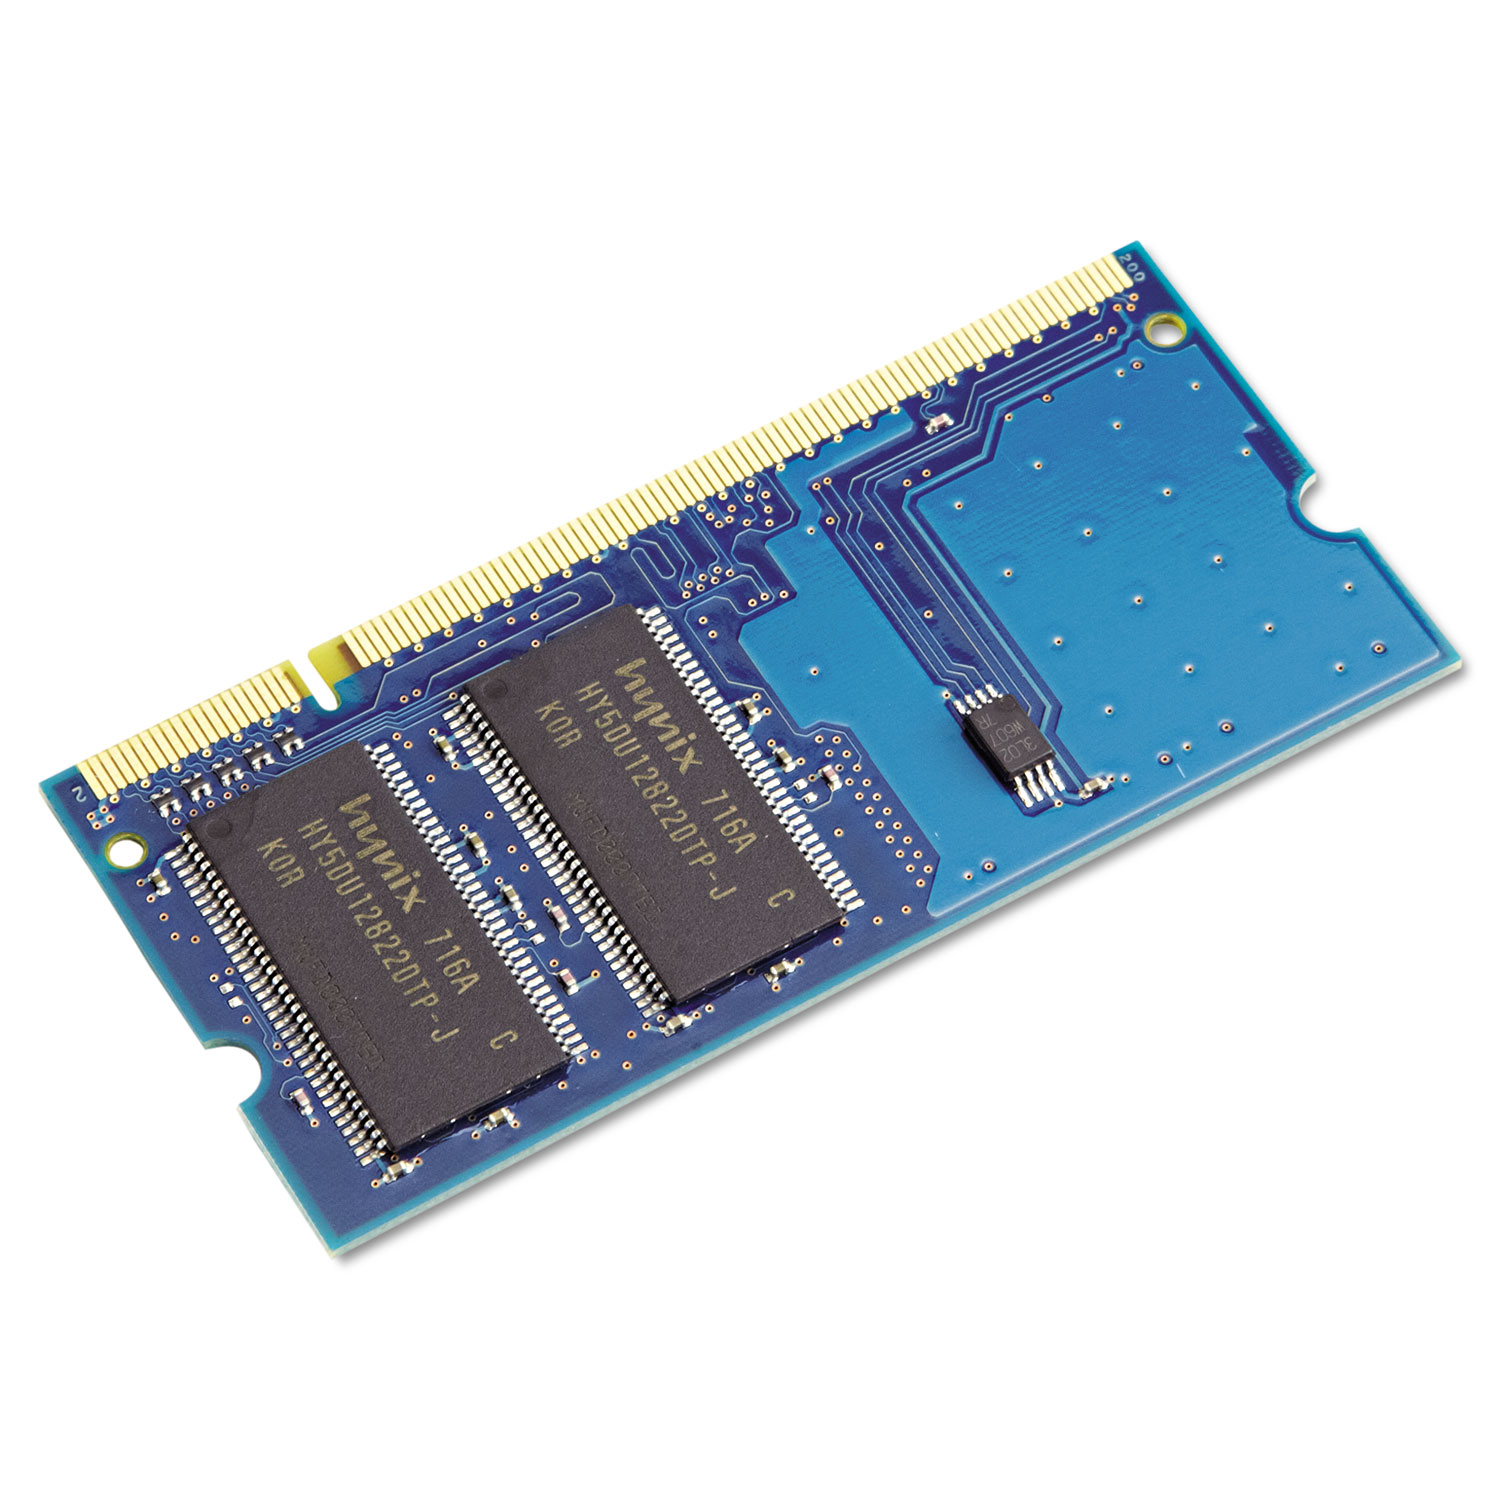 RAM Memory for B400 Series, 256MB